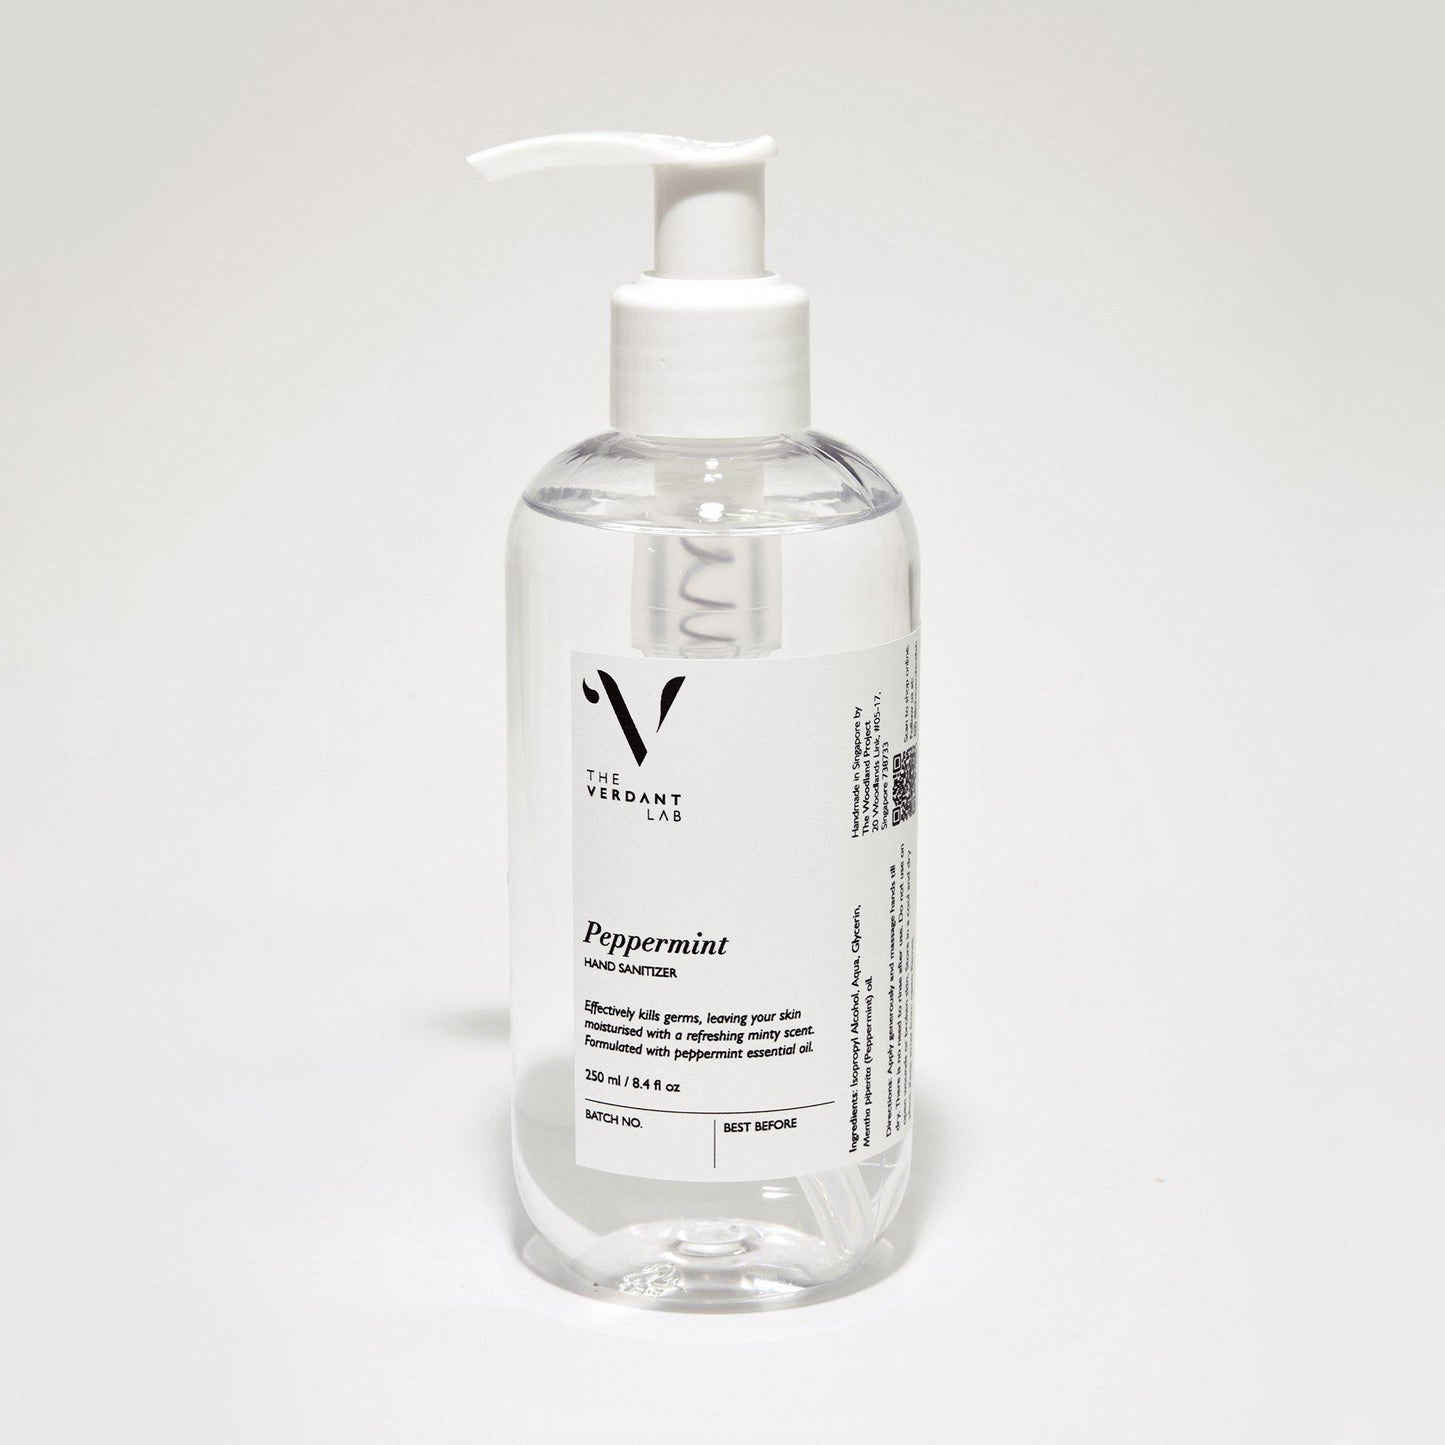 Peppermint | Hand Sanitiser-Hand Sanitiser-The Verdant Lab-250 ml-The Verdant Lab